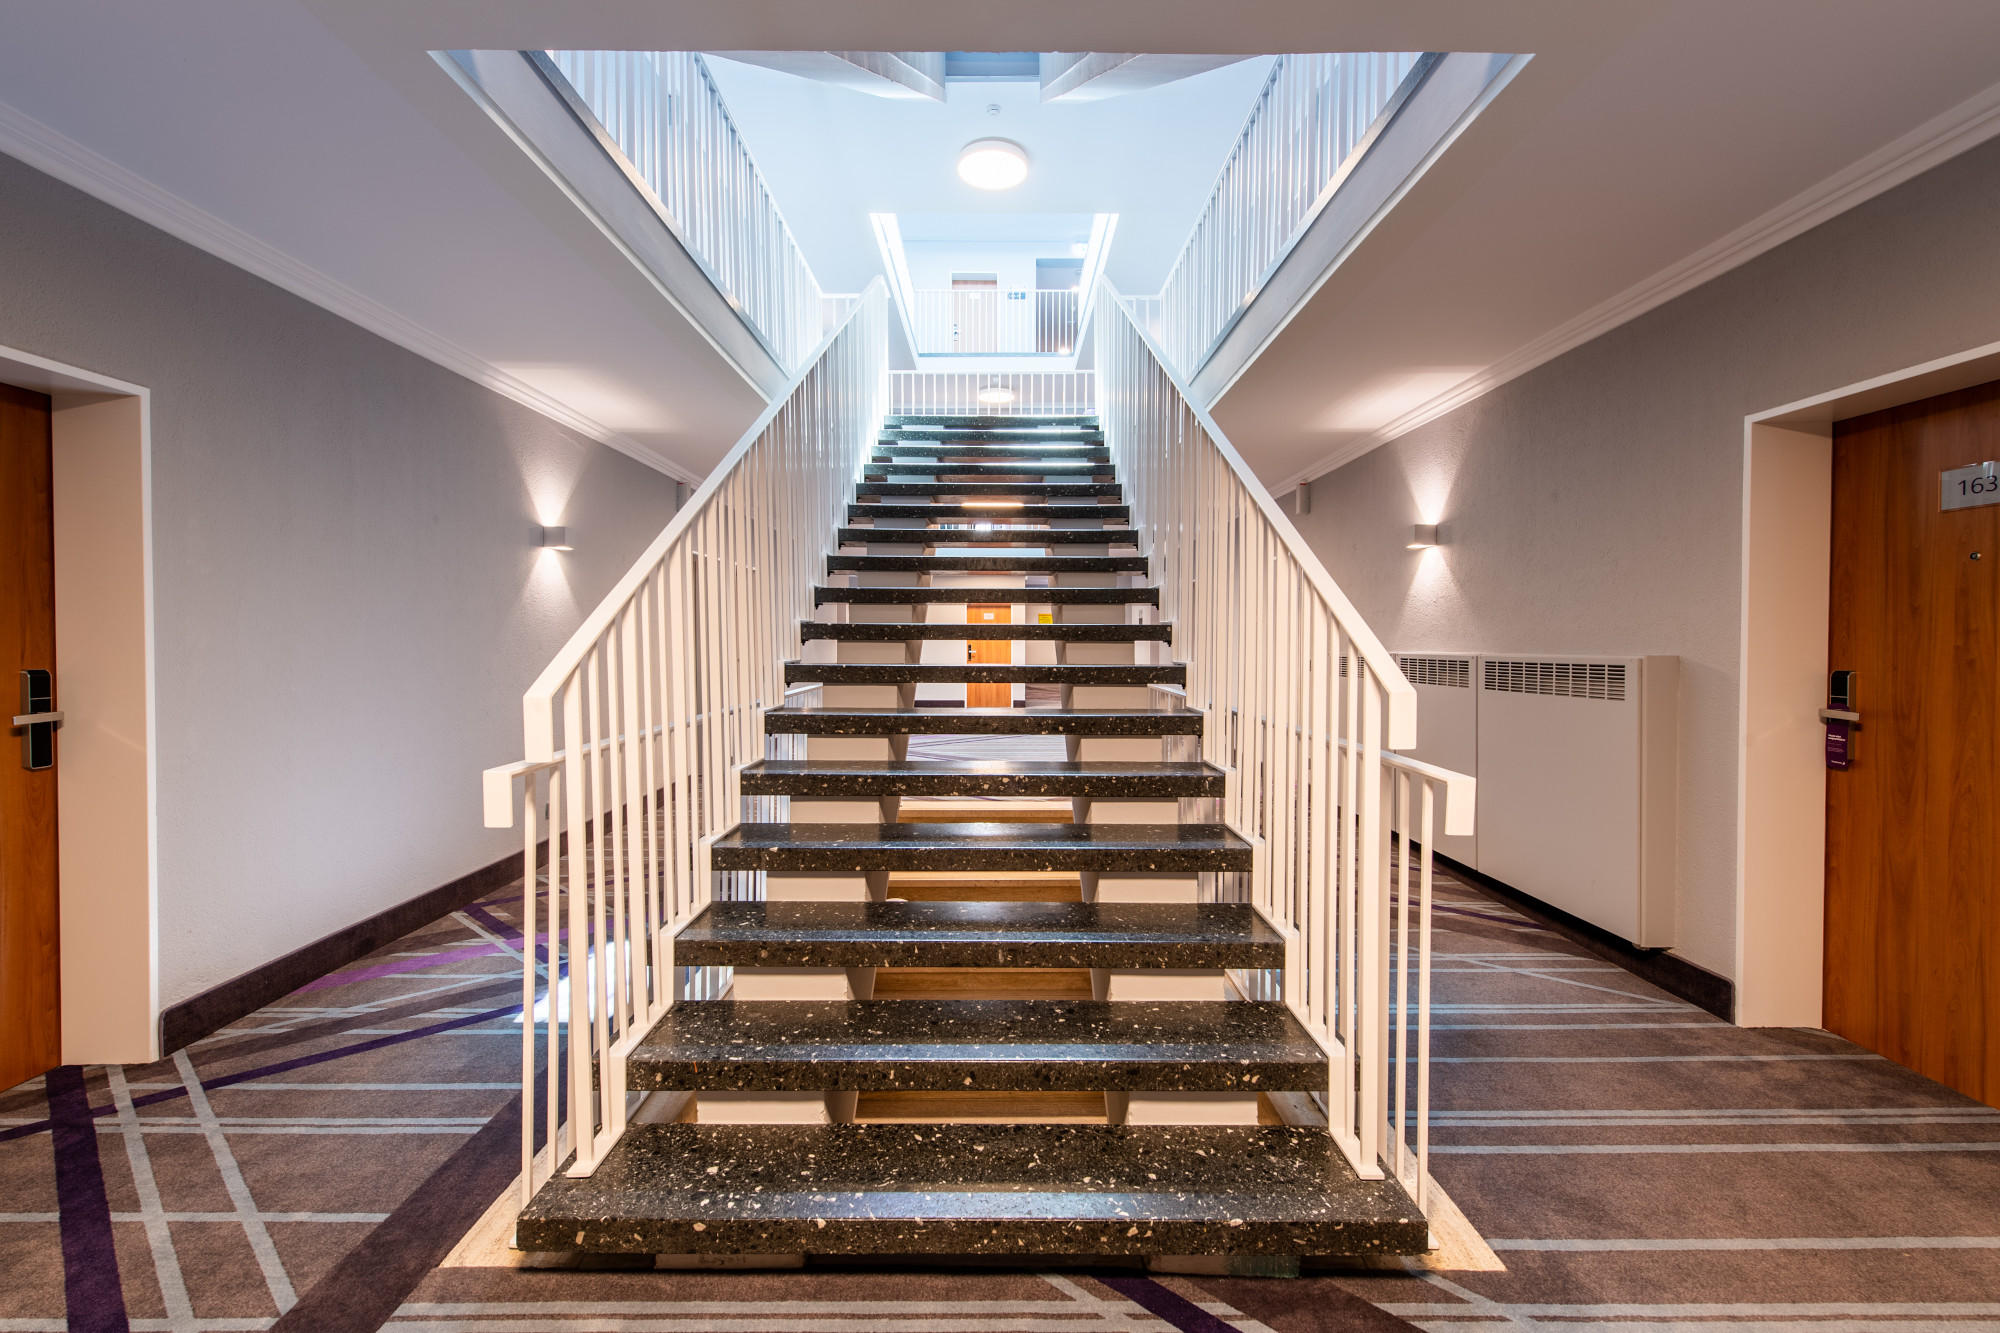 Kundenbild groß 18 Premier Inn Passau Weisser Hase hotel